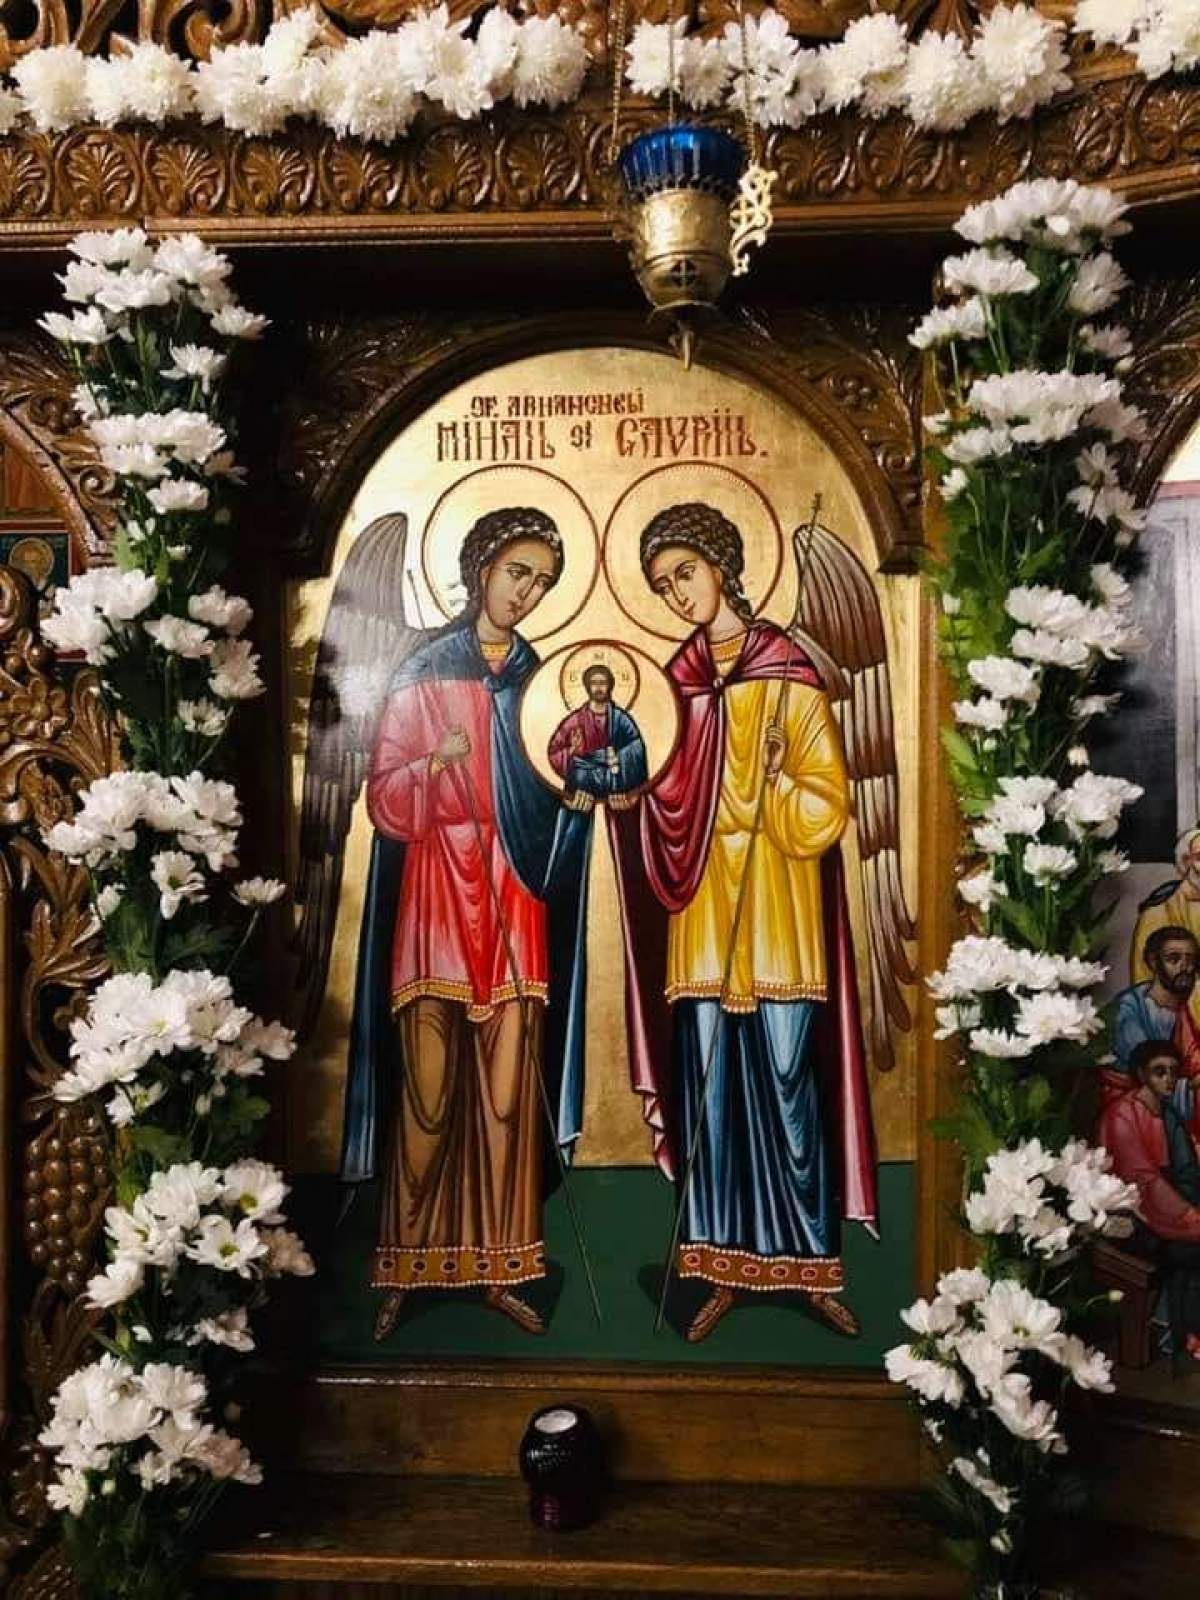 Peste 1,4 milioane de români își sărbătoresc onomastica de Sfinții Mihail și Gavril. Ce prenume se sărbătoresc la această sărbătoare